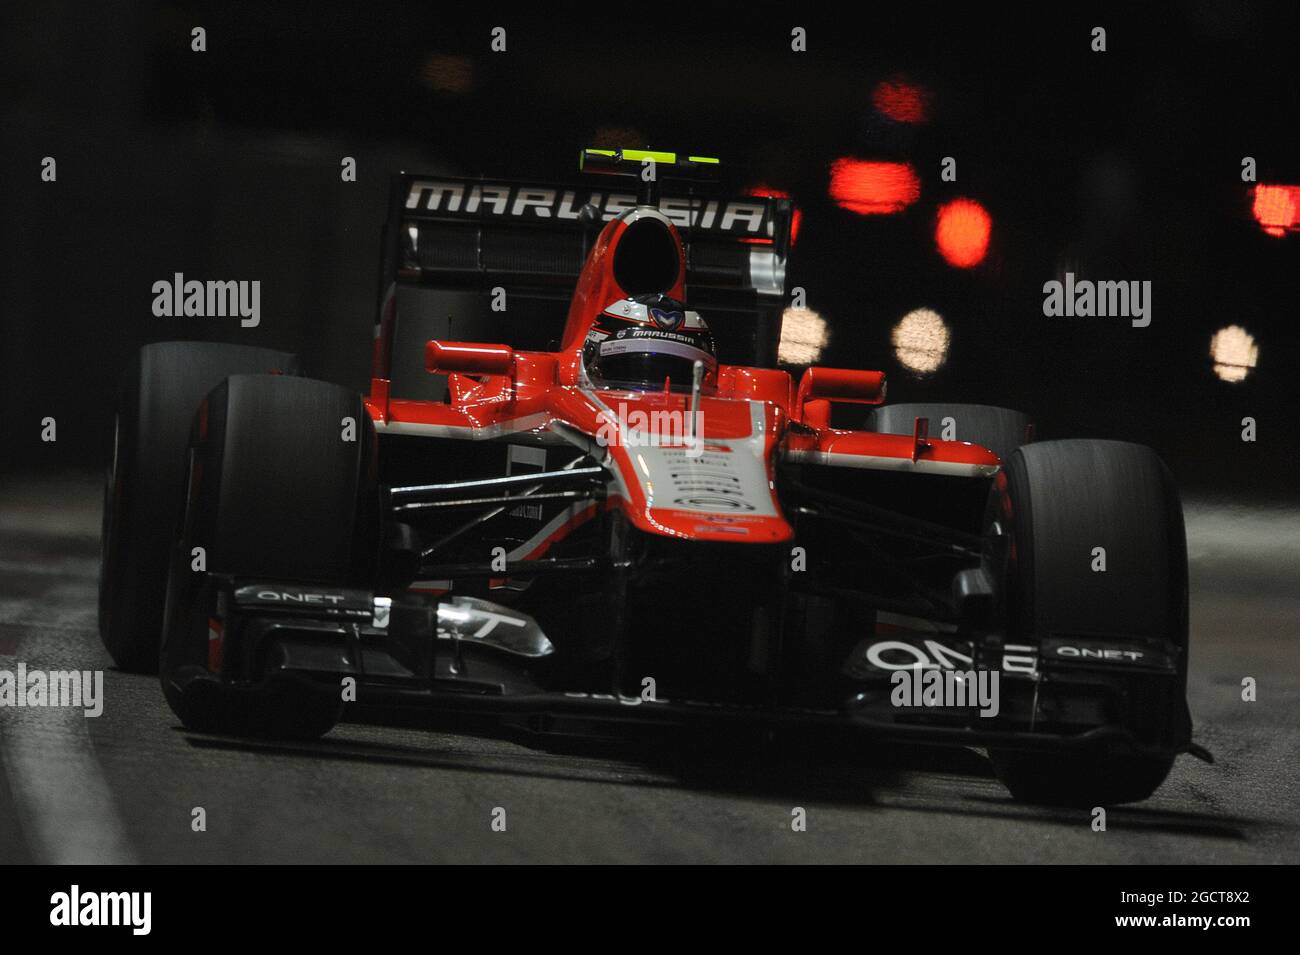 Max Chilton (GBR) Marussia F1 Team MR02. Gran Premio di Singapore, domenica 22 settembre 2013. Circuito Marina Bay Street, Singapore. Foto Stock